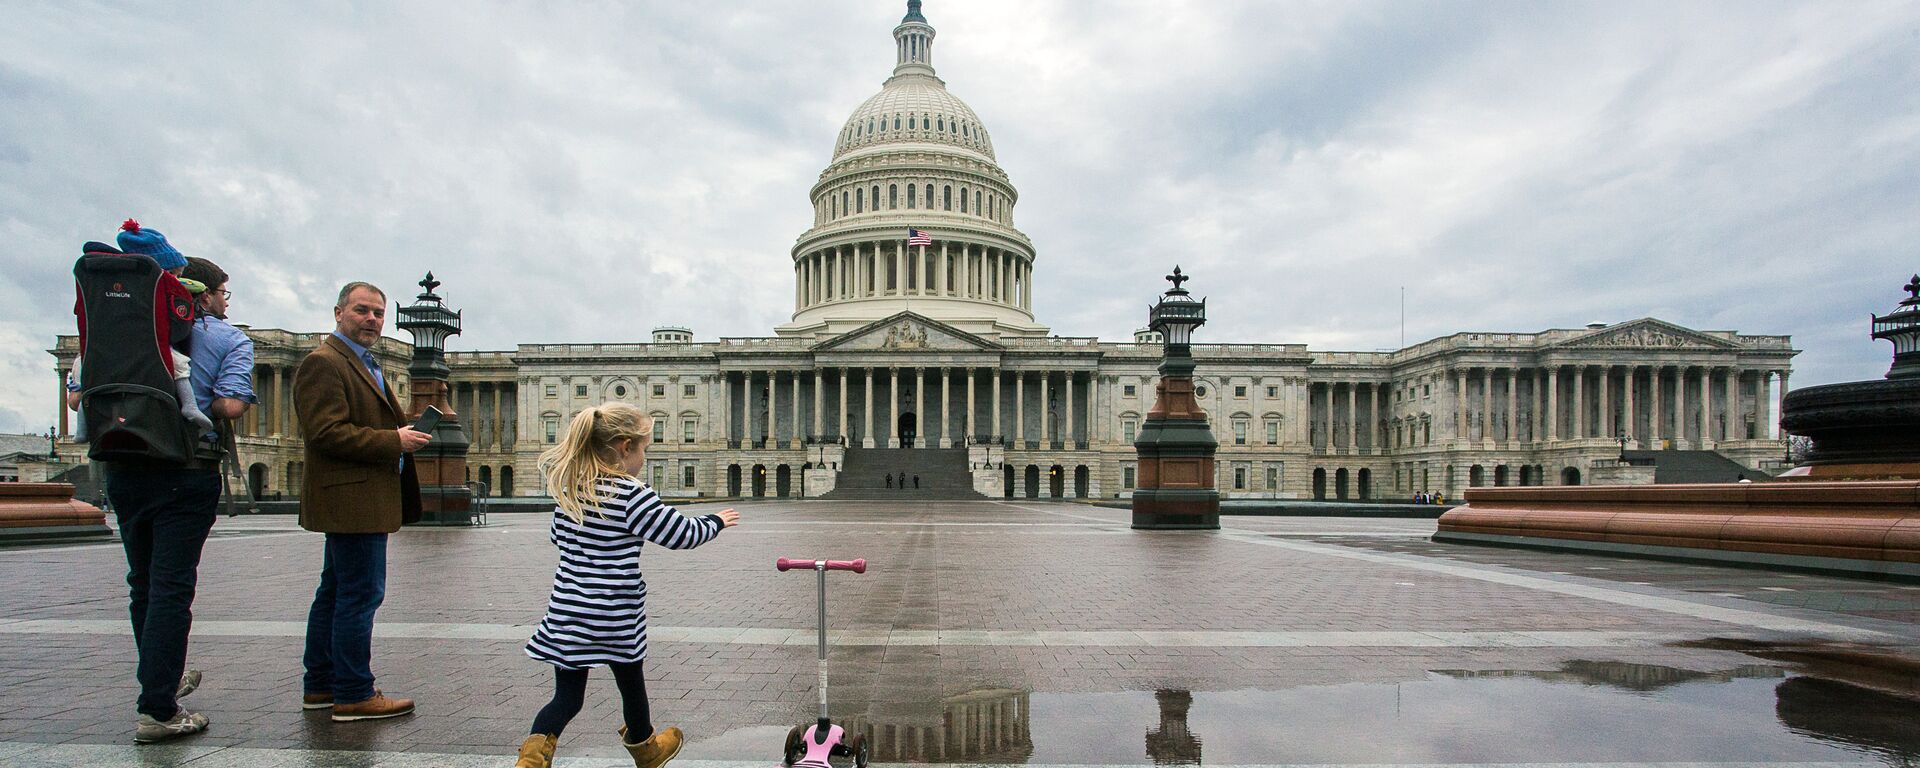 Здание Конгресса США на Капитолийском холме в Вашингтоне. - Sputnik Армения, 1920, 10.04.2020